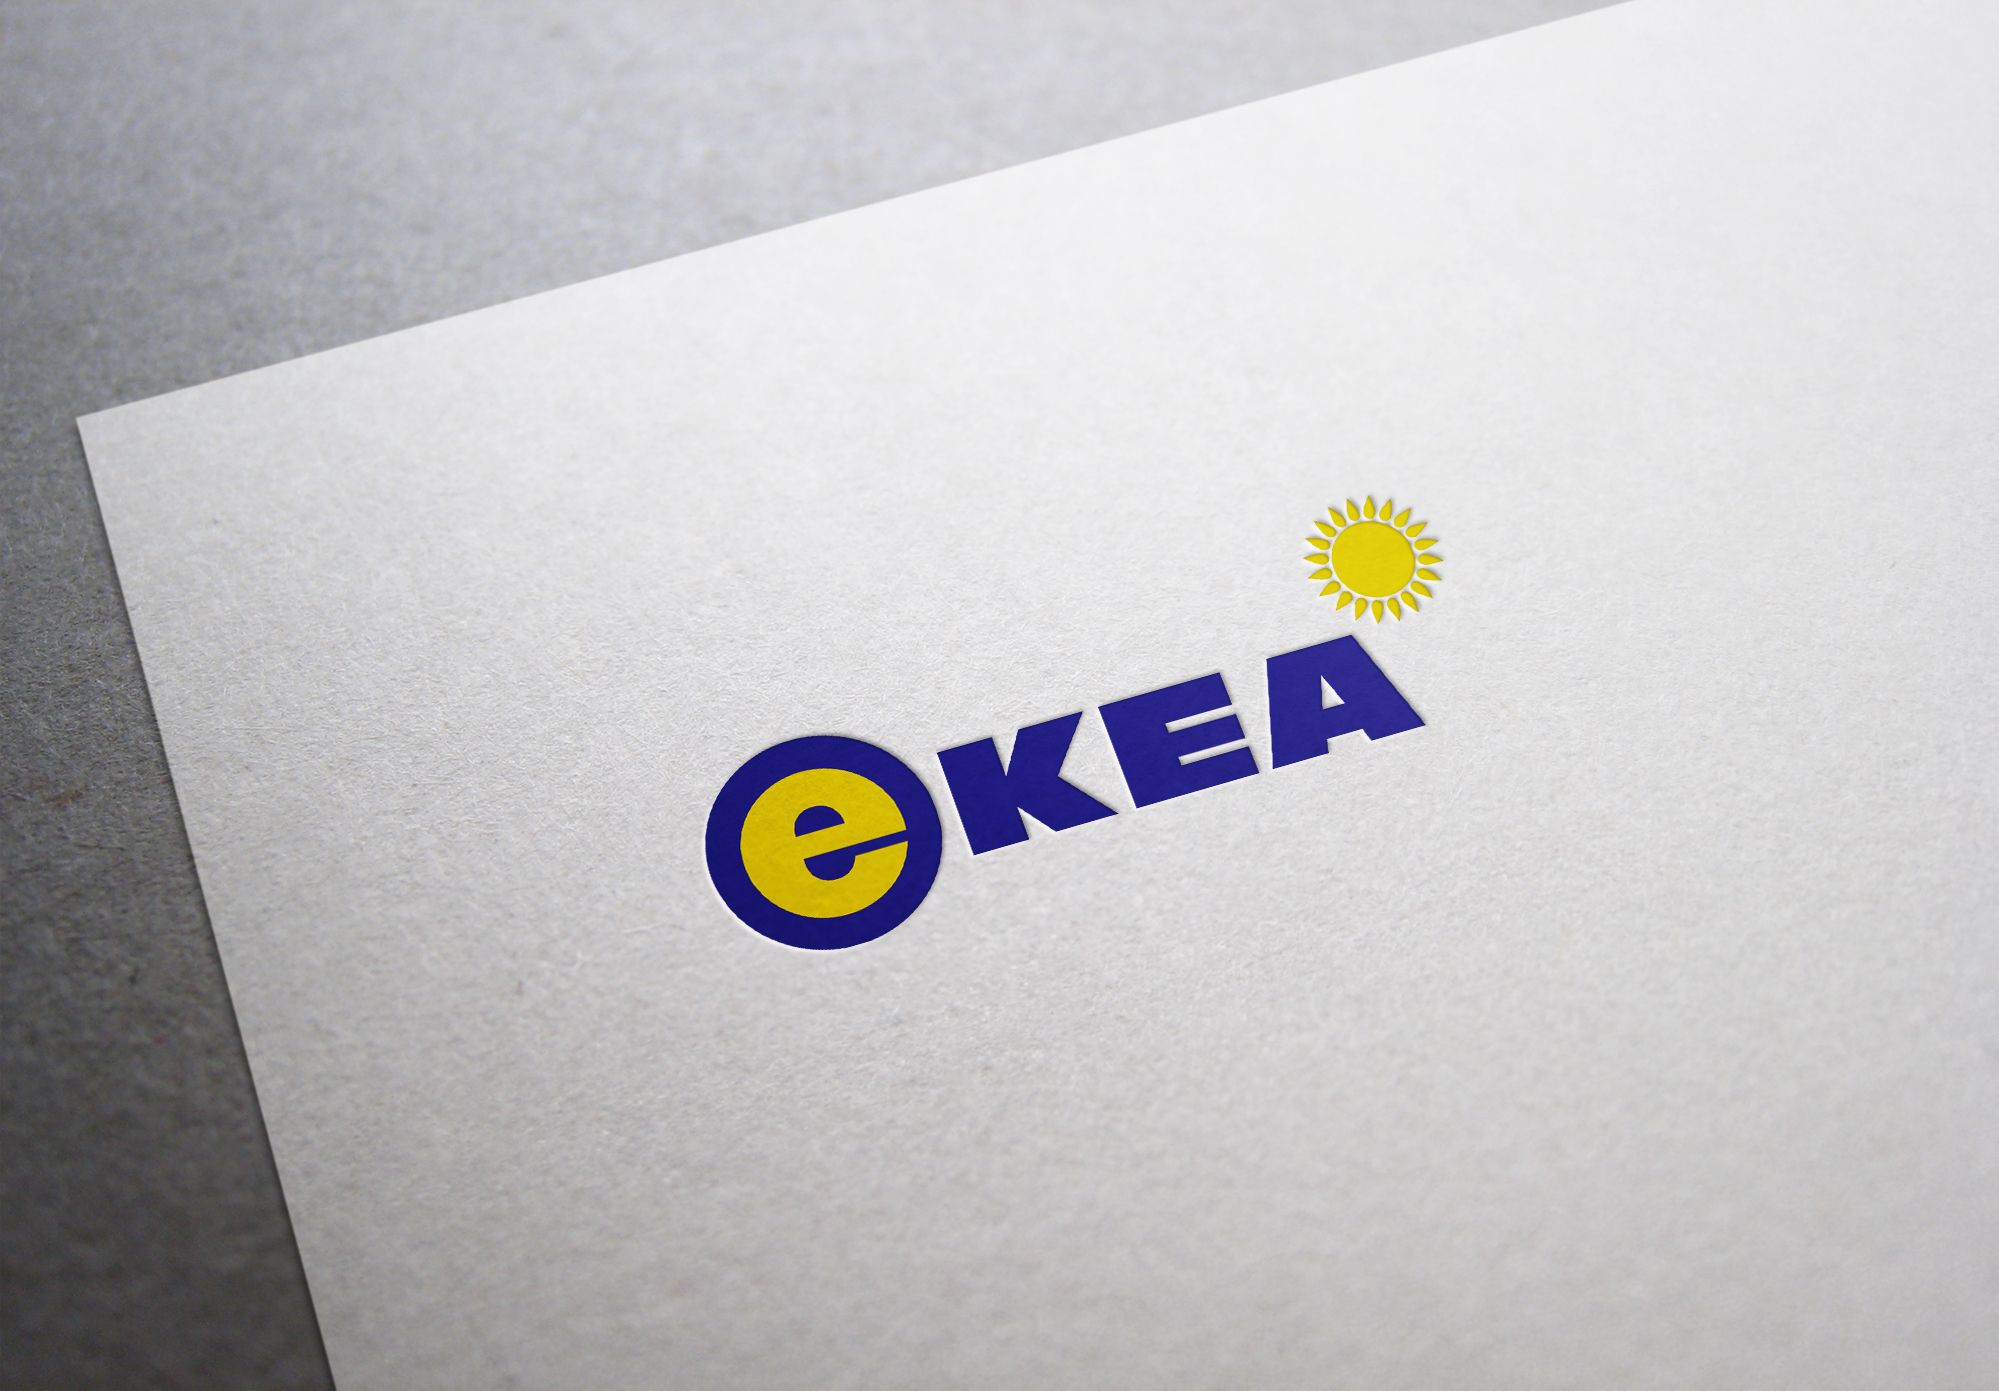 Логи и фирменный стиль для дилера товаров IKEA - дизайнер U4po4mak